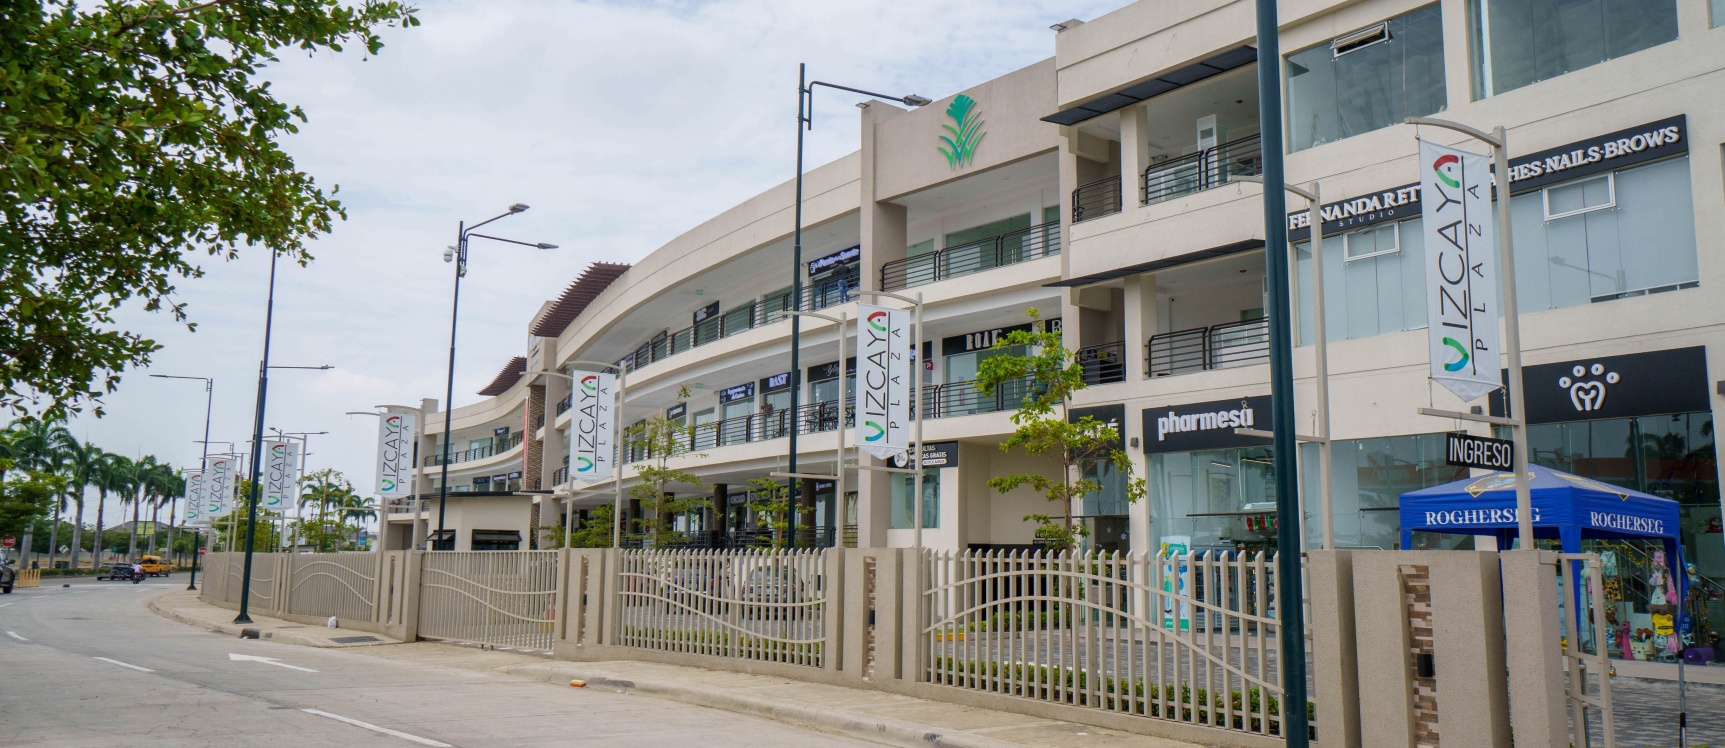 GeoBienes - Local comercial en alquiler ubicado en Plaza Vizcaya, Samborondón - Plusvalia Guayaquil Casas de venta y alquiler Inmobiliaria Ecuador